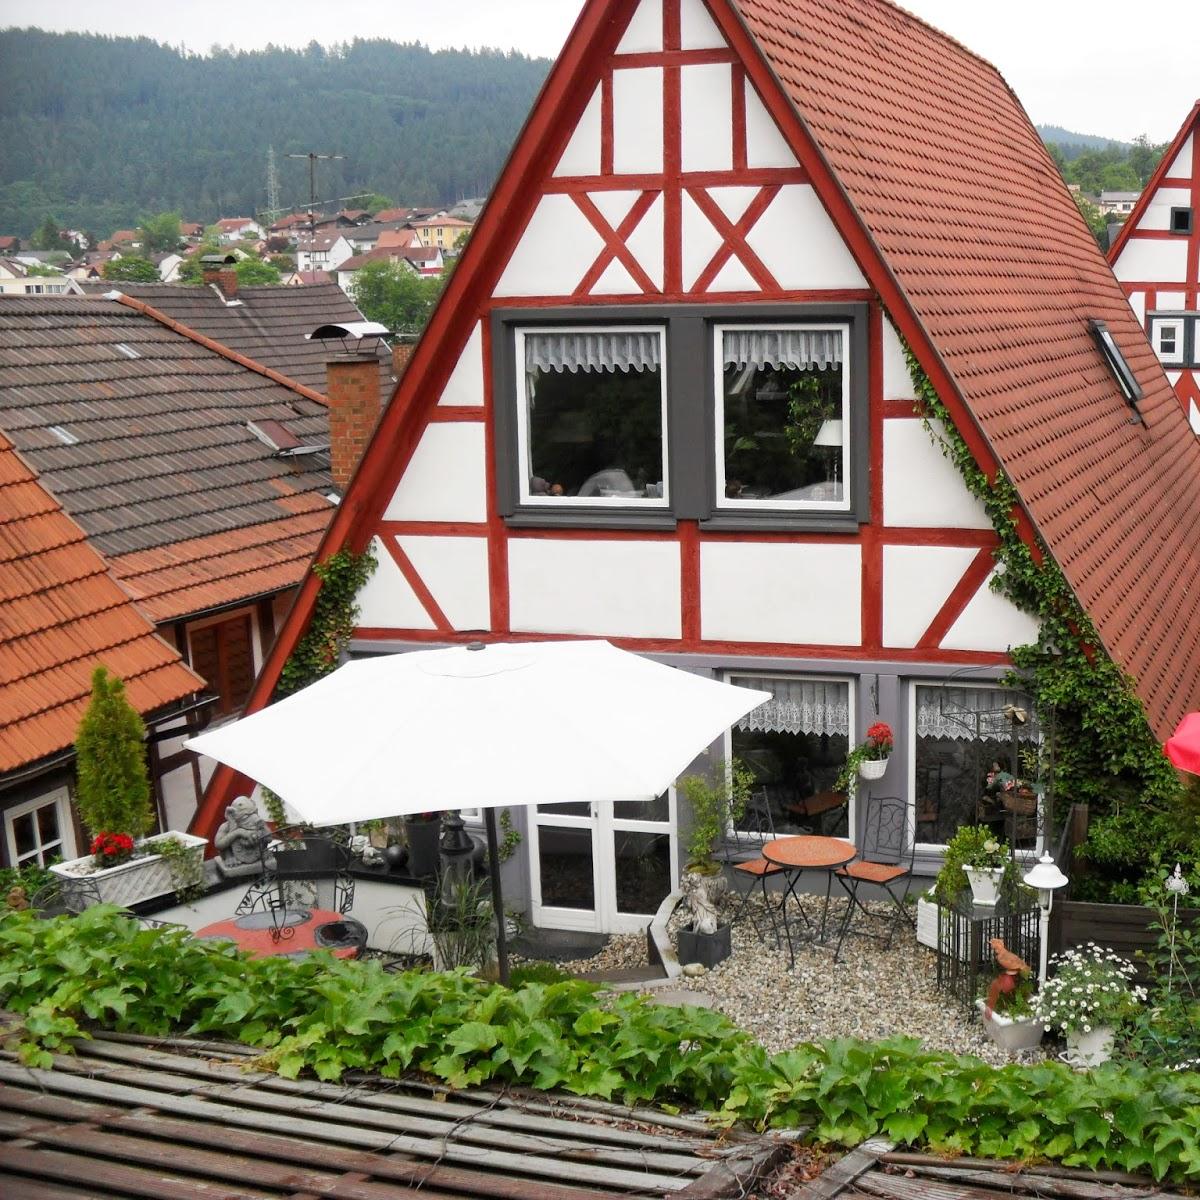 Restaurant "Ferienwohnung Hirschhorn" in Hirschhorn (Neckar)